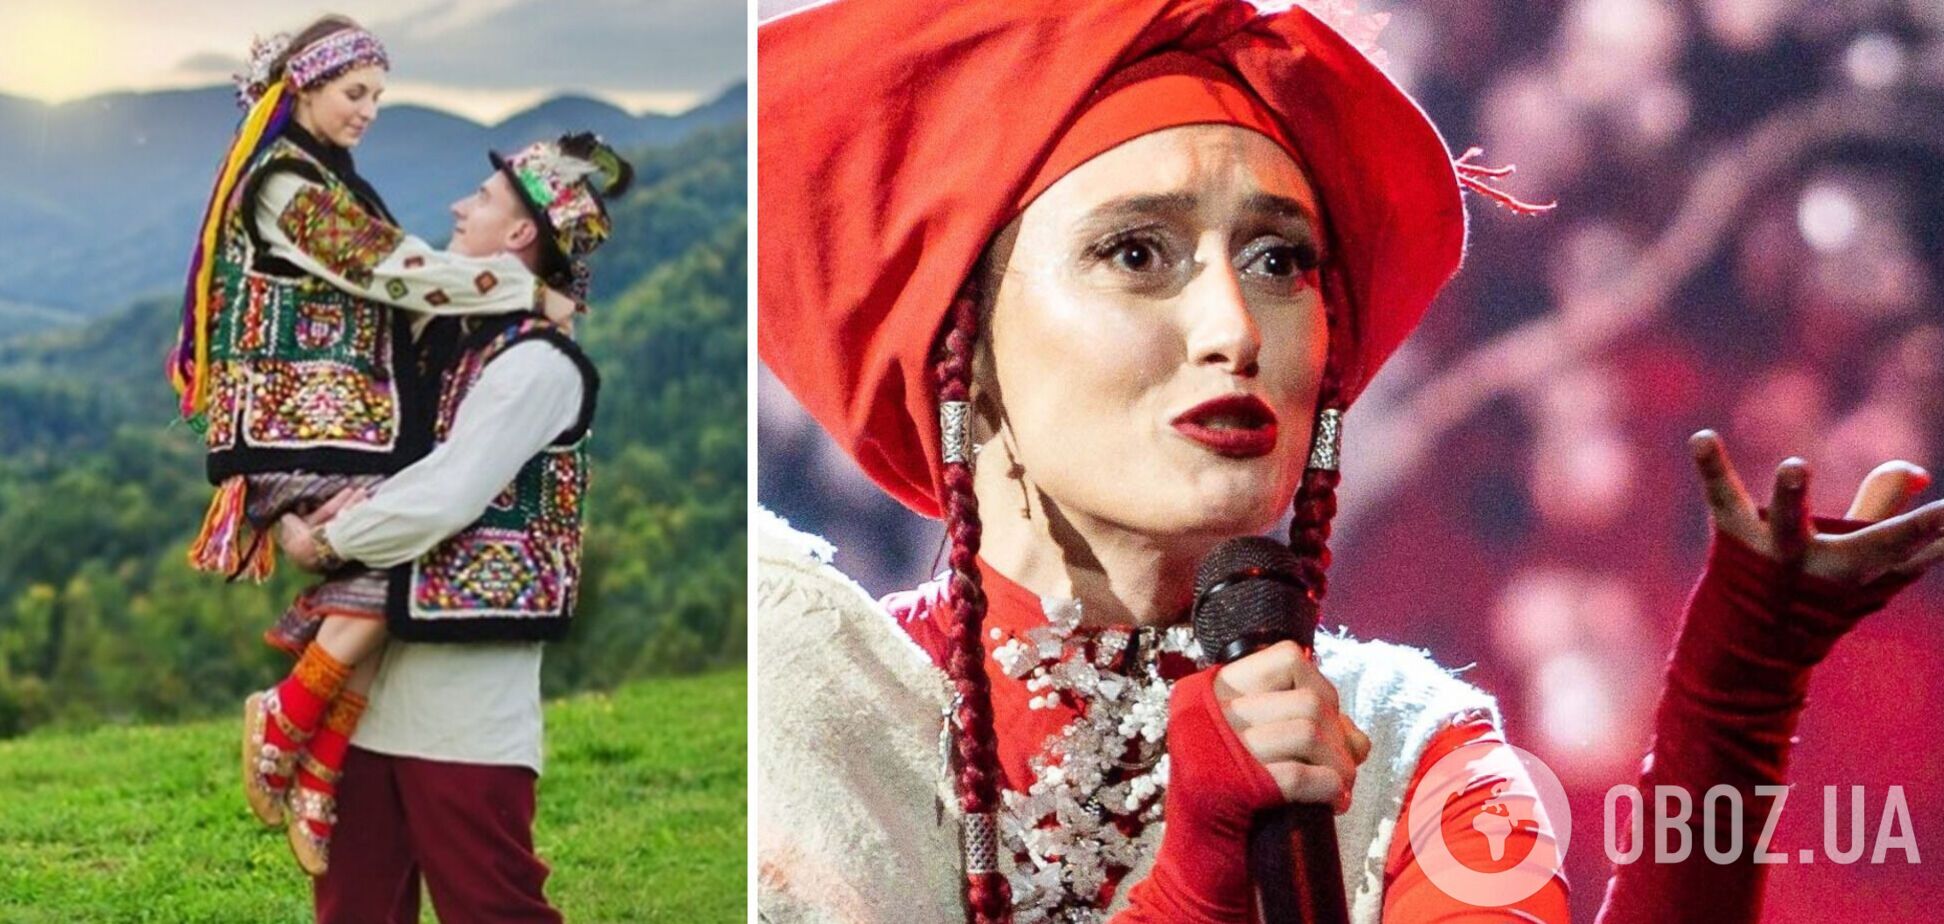 Украина – слаборазвитая страна гуцулов? Продюсер раскритиковал песню Alina Pash для Евровидения